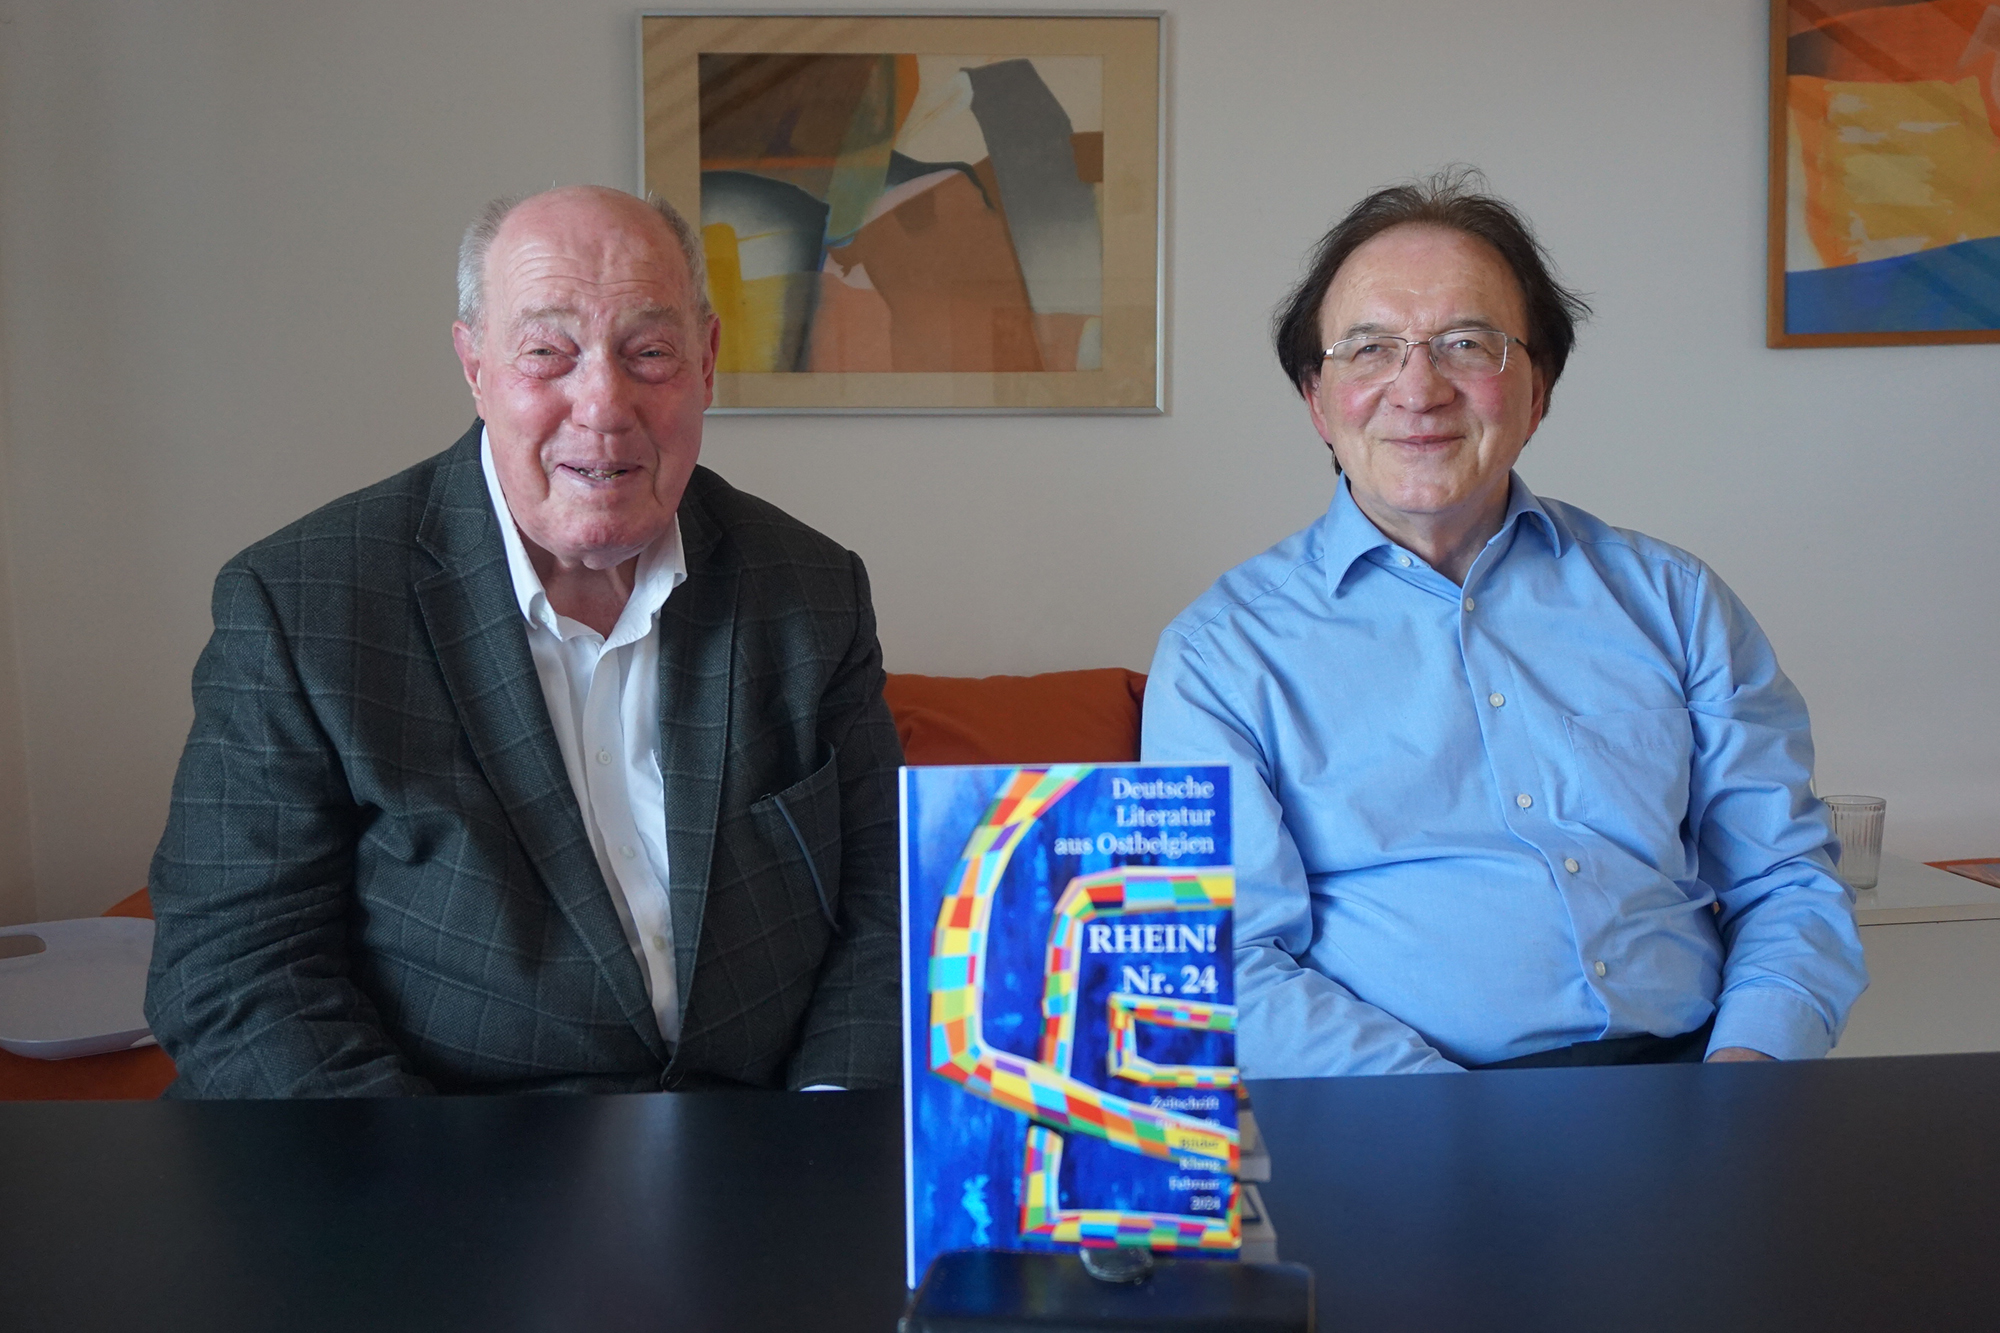 Die beiden Herausgeber der Schriftenreihe "Rhein!", Kurt Roessler (l.) und Rolf Stolz